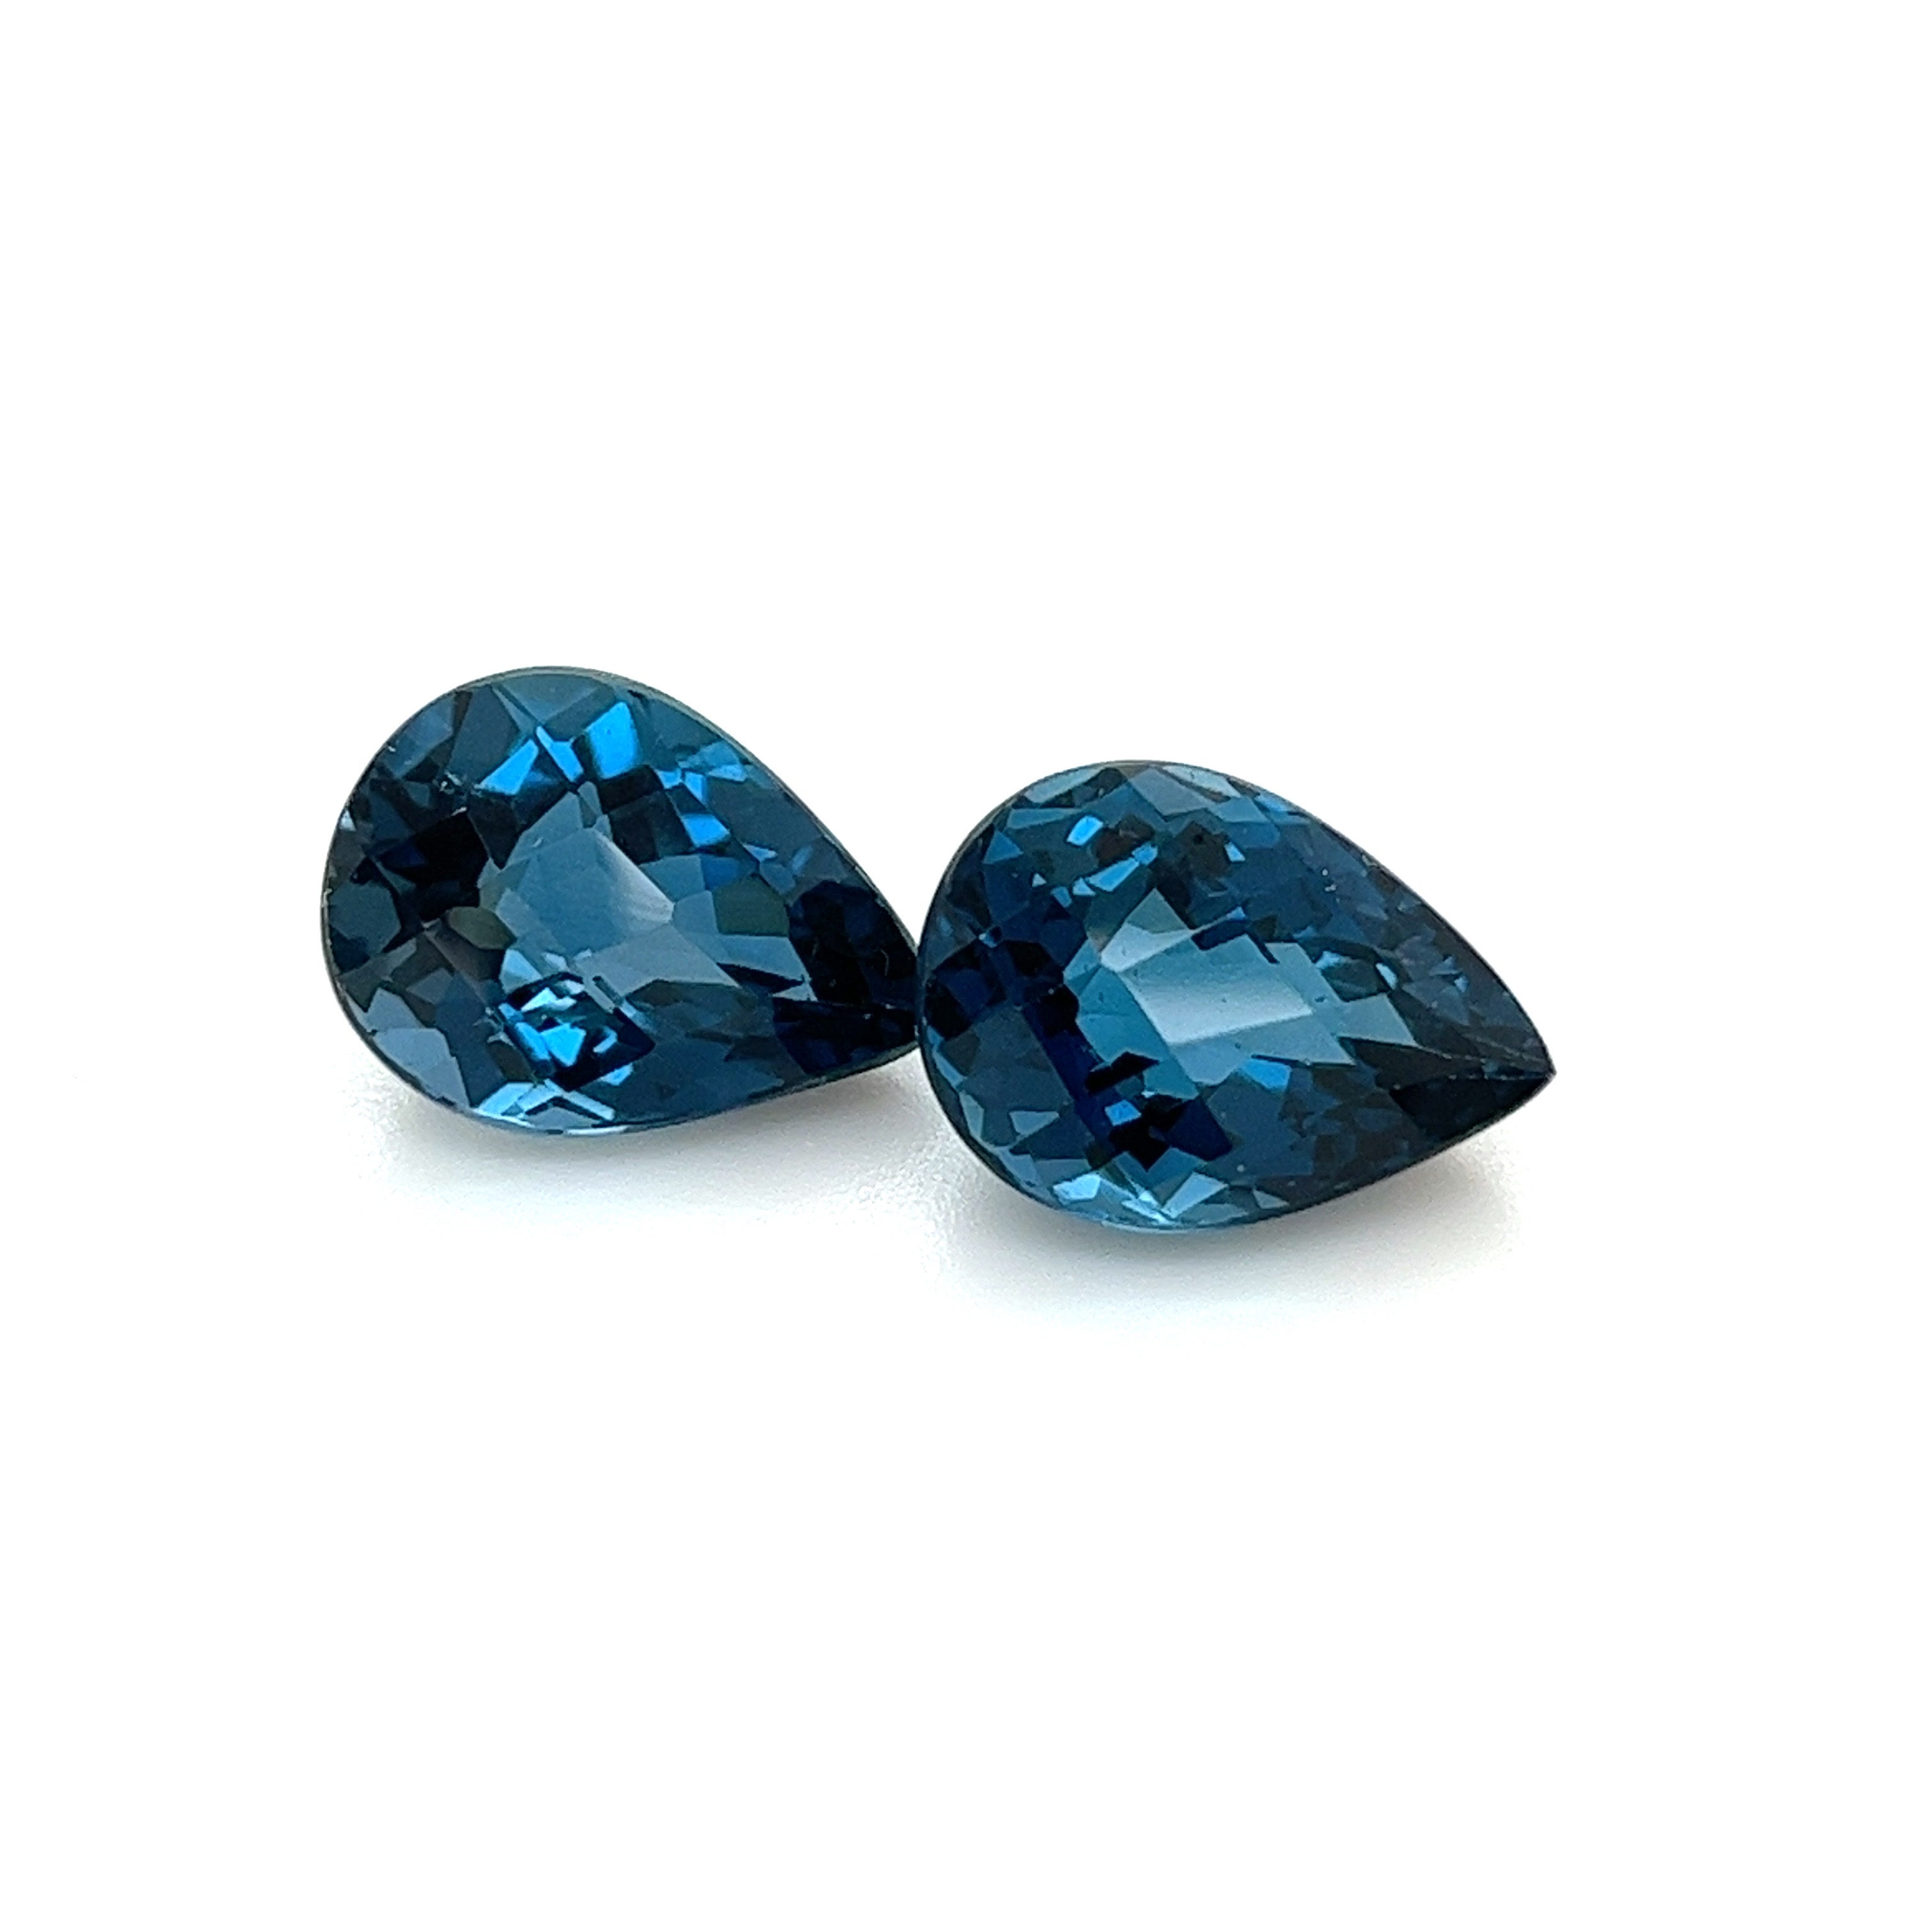 London Blue Topaz Gemstones; Natural Brazil Topaz, 13.870cts - Mark Oliver Gems